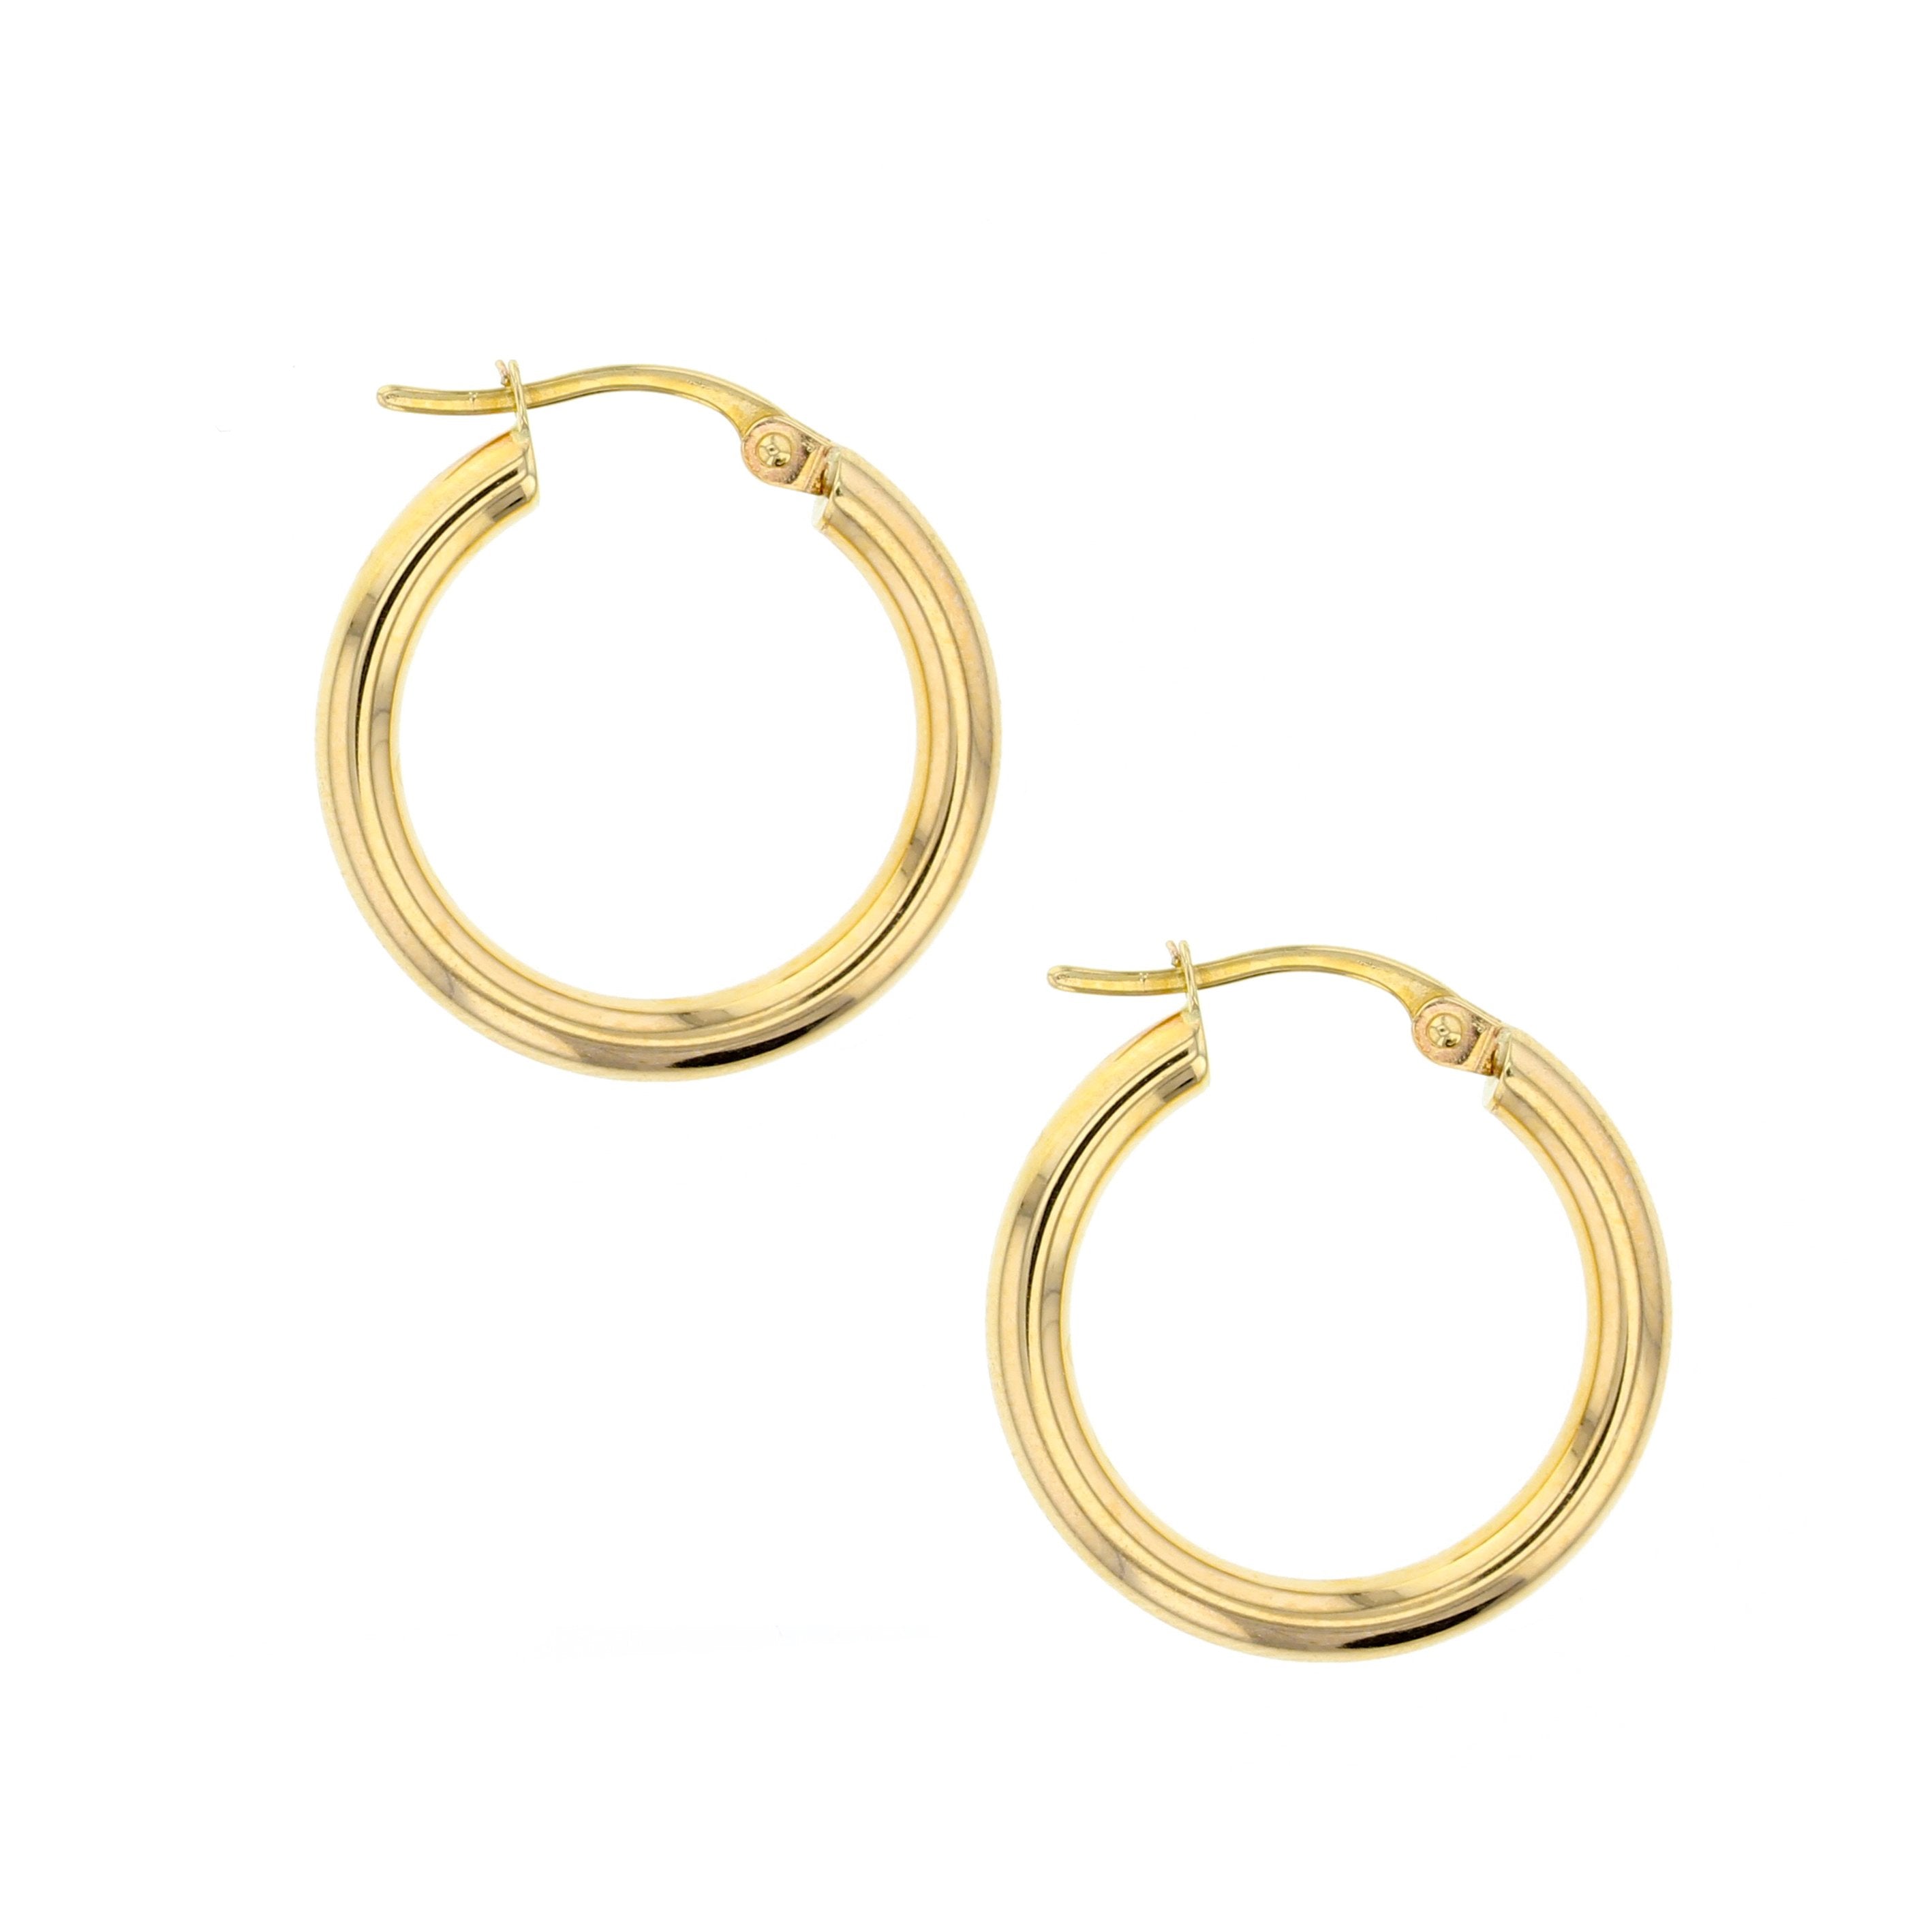 Plain 15mm Hoop Earrings in 9ct Gold